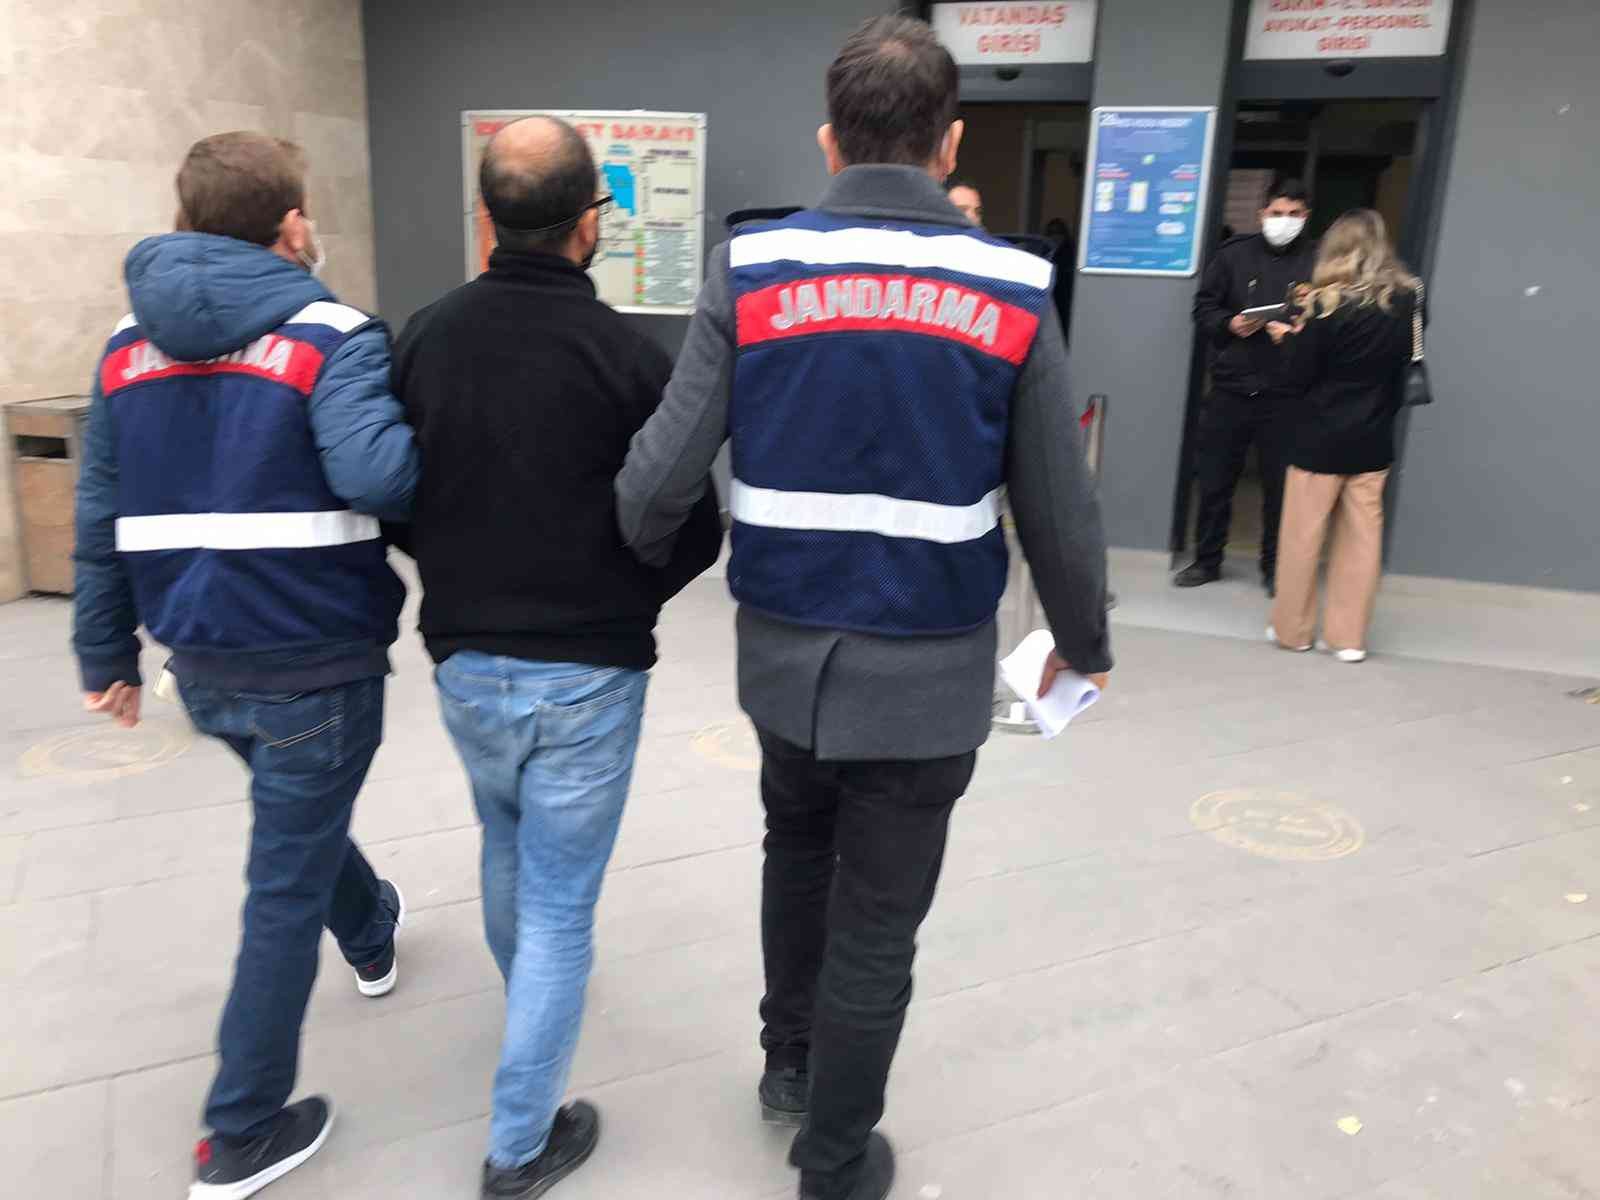 İzmir’de FETÖ ve PKK şüphelisi 3 kişi yakalandı #izmir